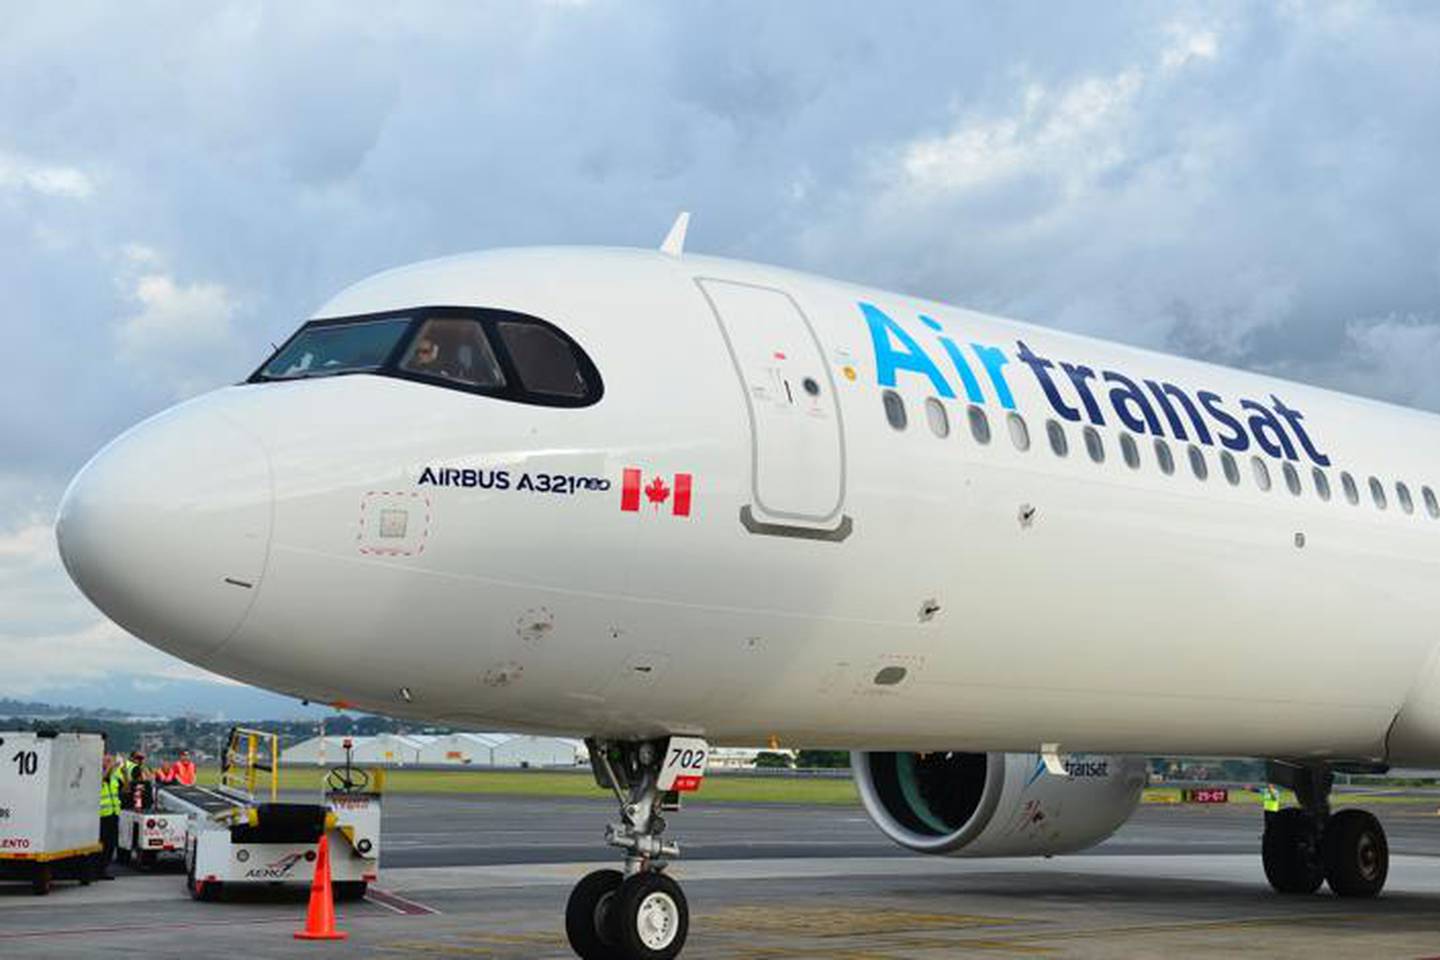 El nuevo servicio de Air Transat es triangulado, pues une a Vancouver con los aeropuertos Juan Santamaría y Daniel Oduber. Se realizará de aquí a abril del 2020. Cortesía del ICT